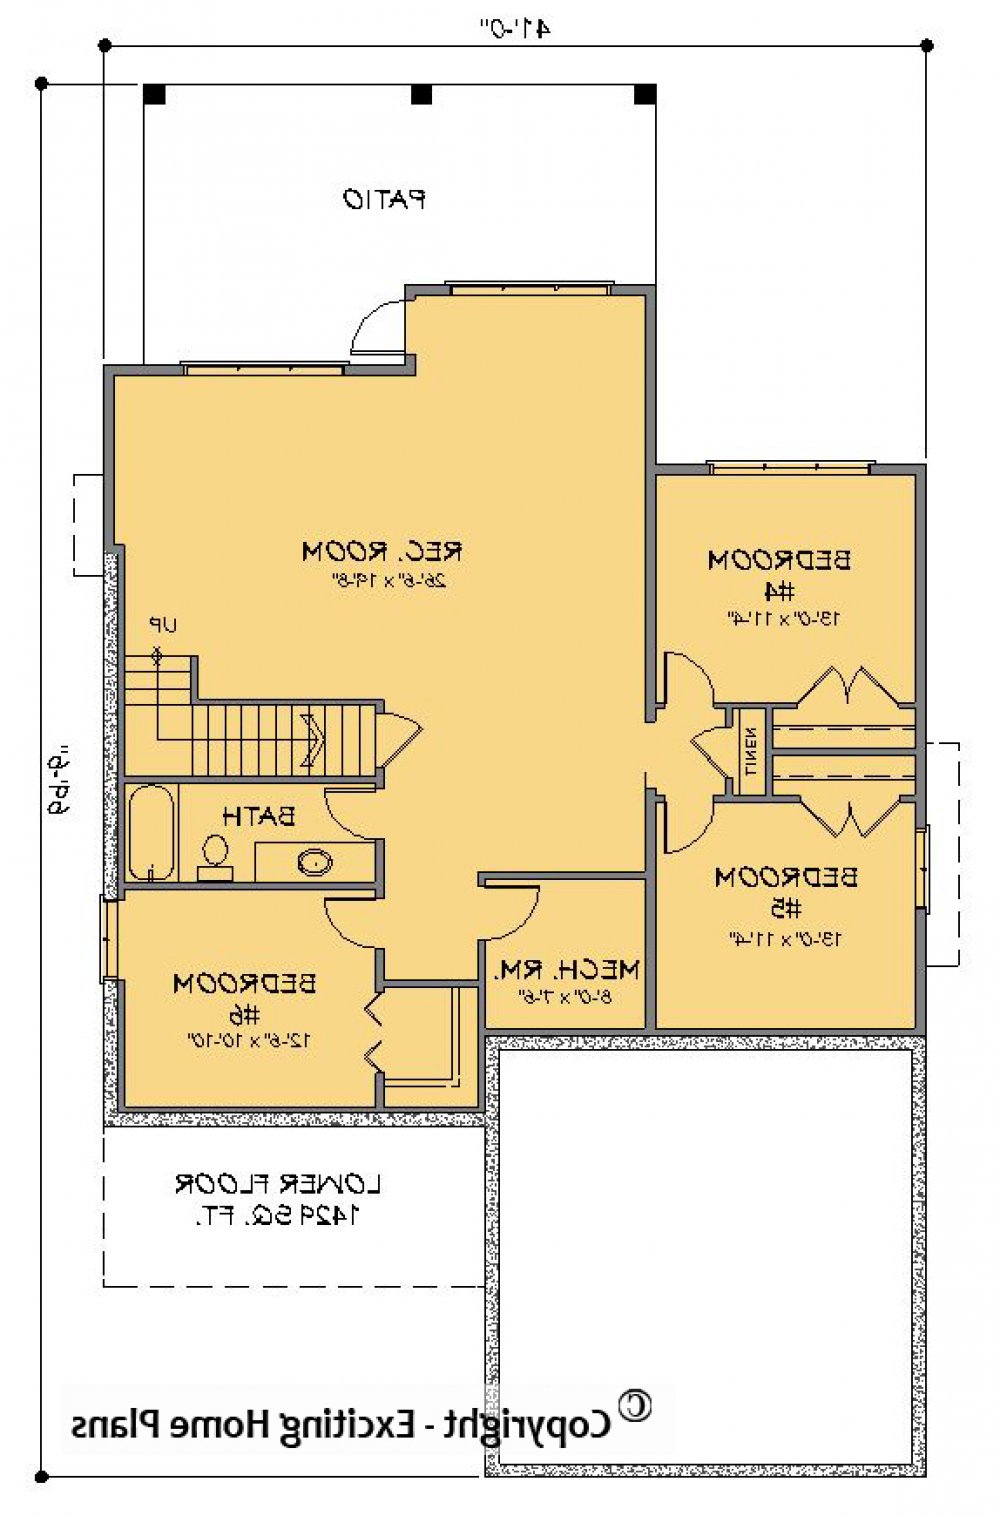 House Plan E1461-10 Lower Floor Plan REVERSE